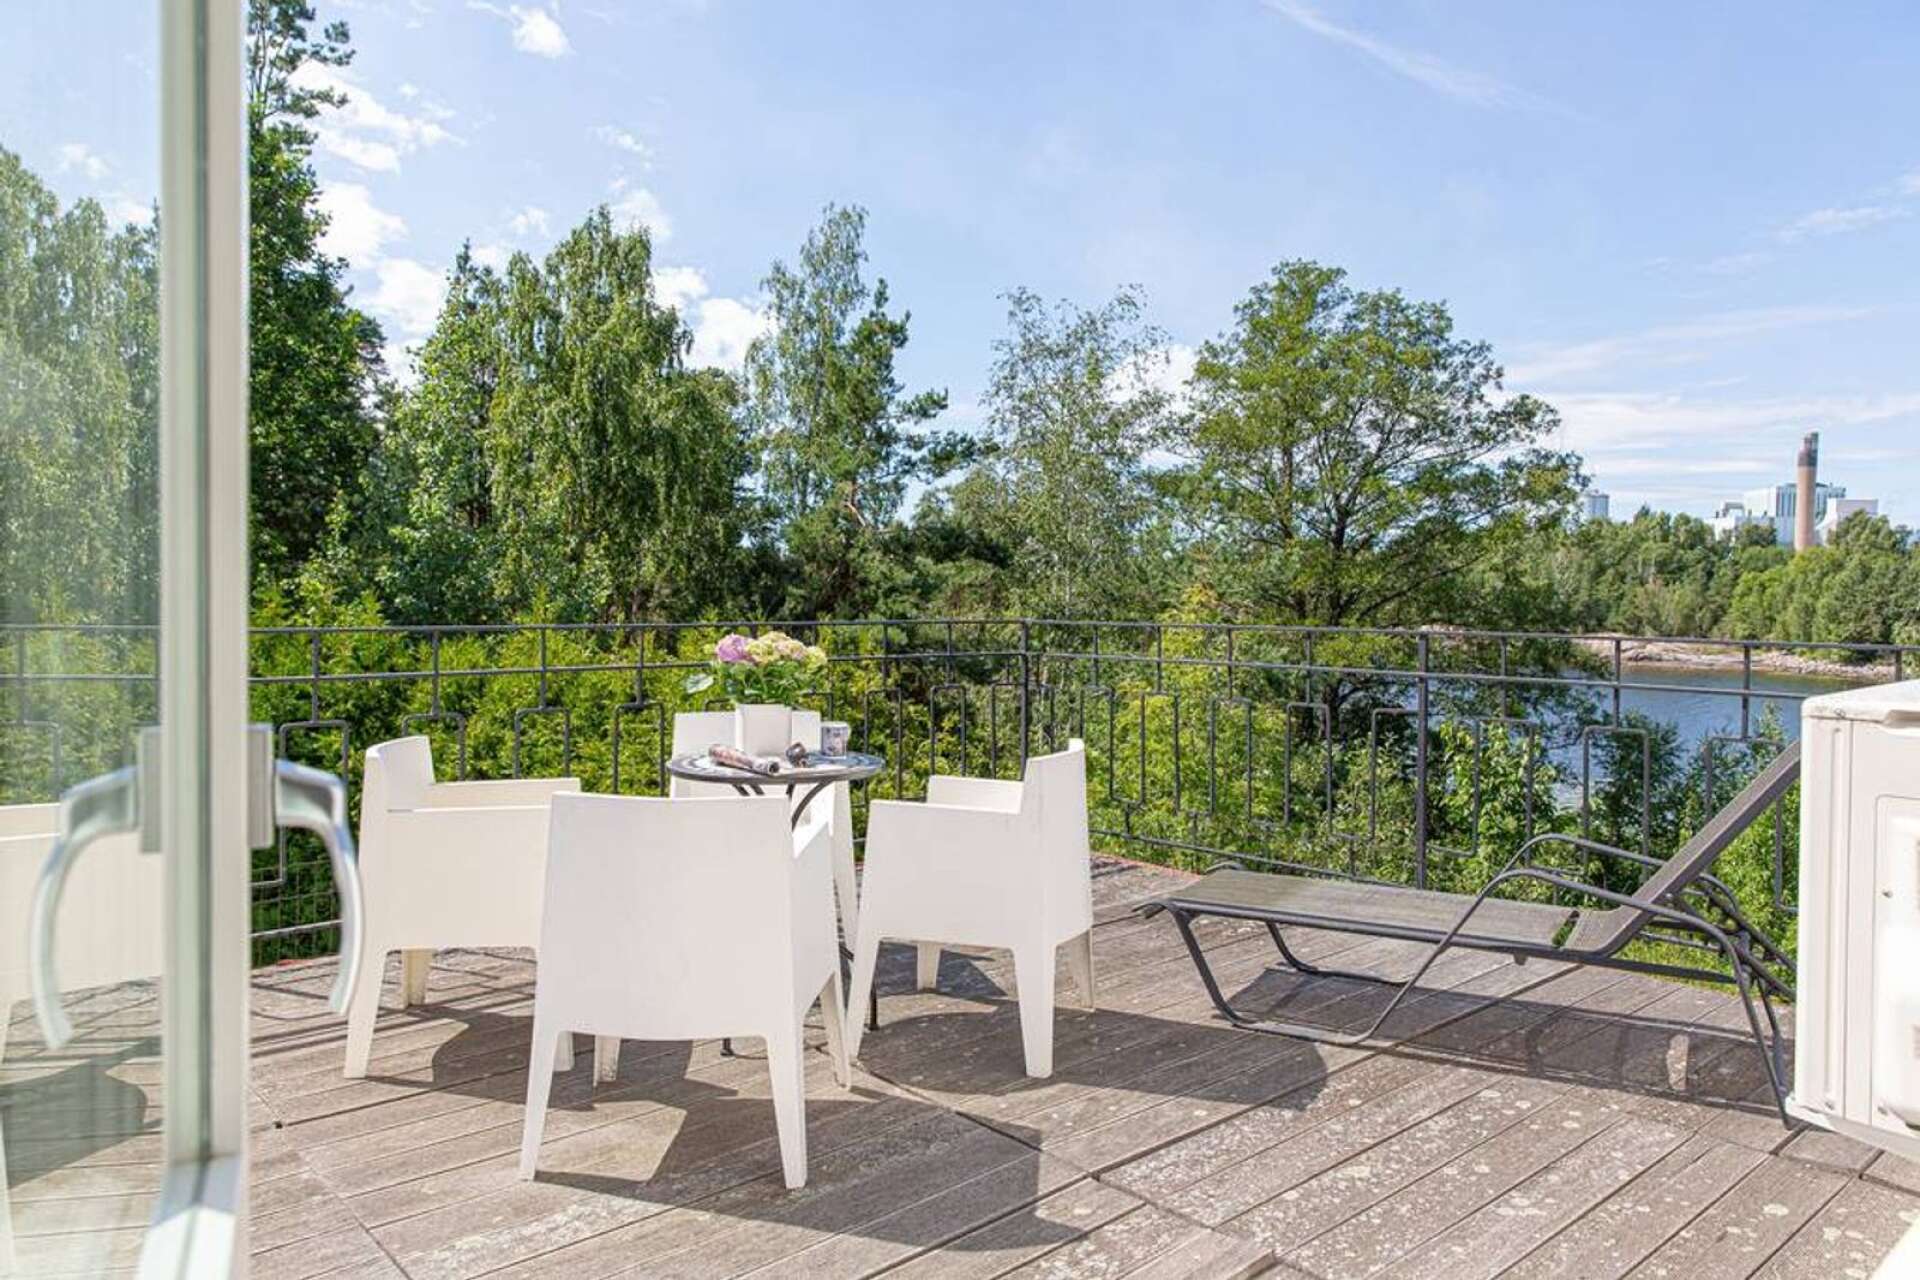 Utsikten från villan bjuder på Vänervatten, men även bruket som den ursprungliga ägaren var direktör för en gång i tiden. 